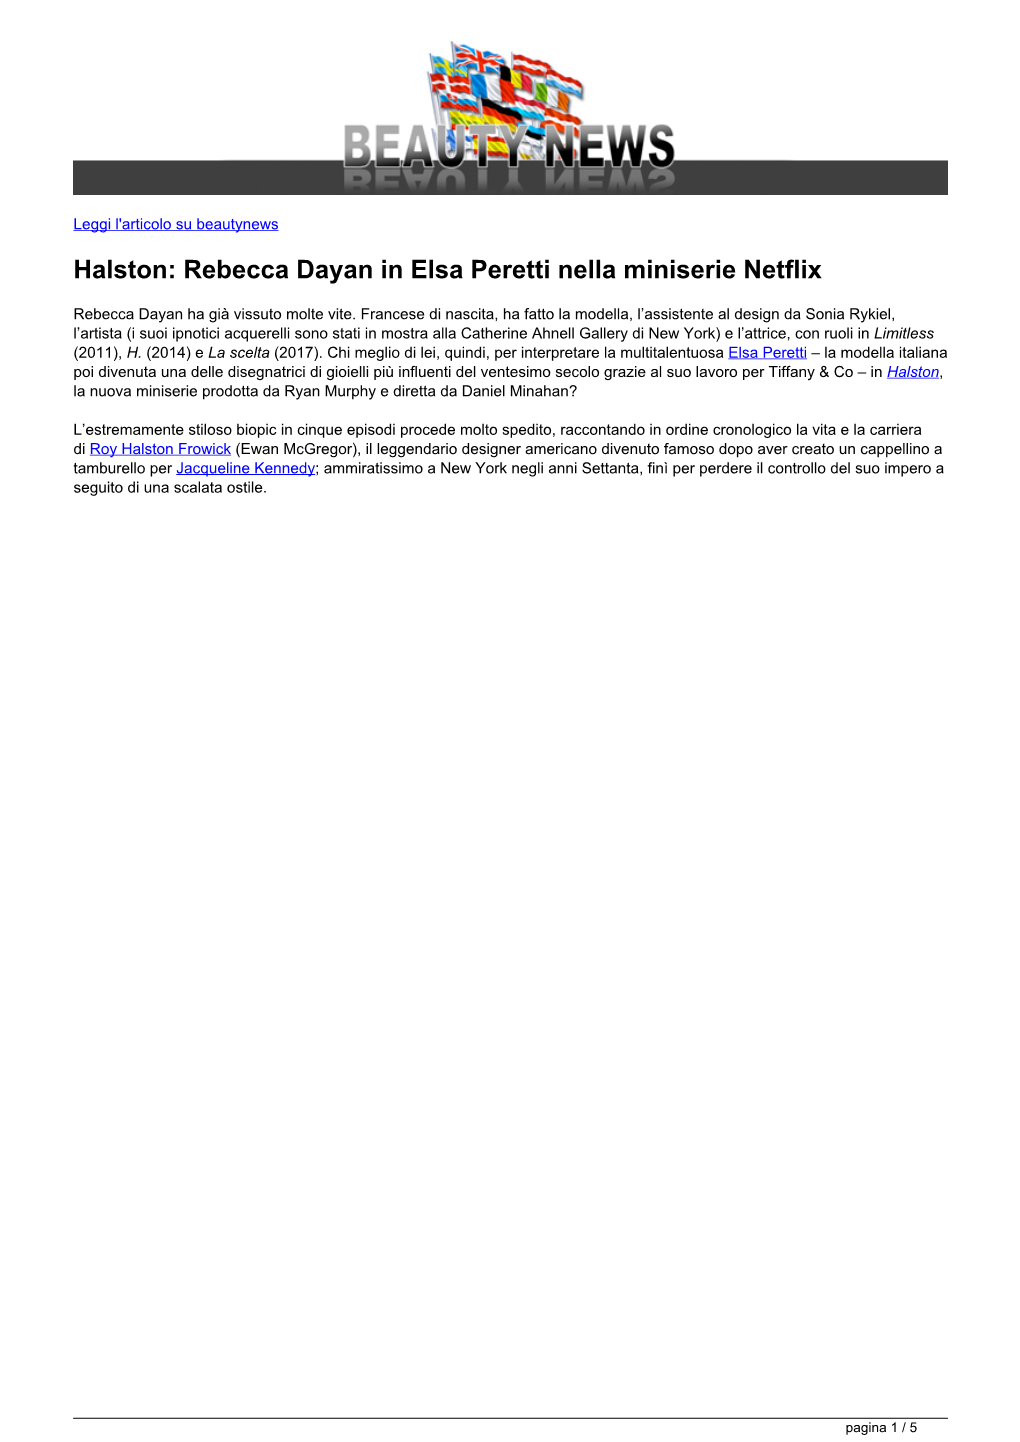 Halston: Rebecca Dayan in Elsa Peretti Nella Miniserie Netflix